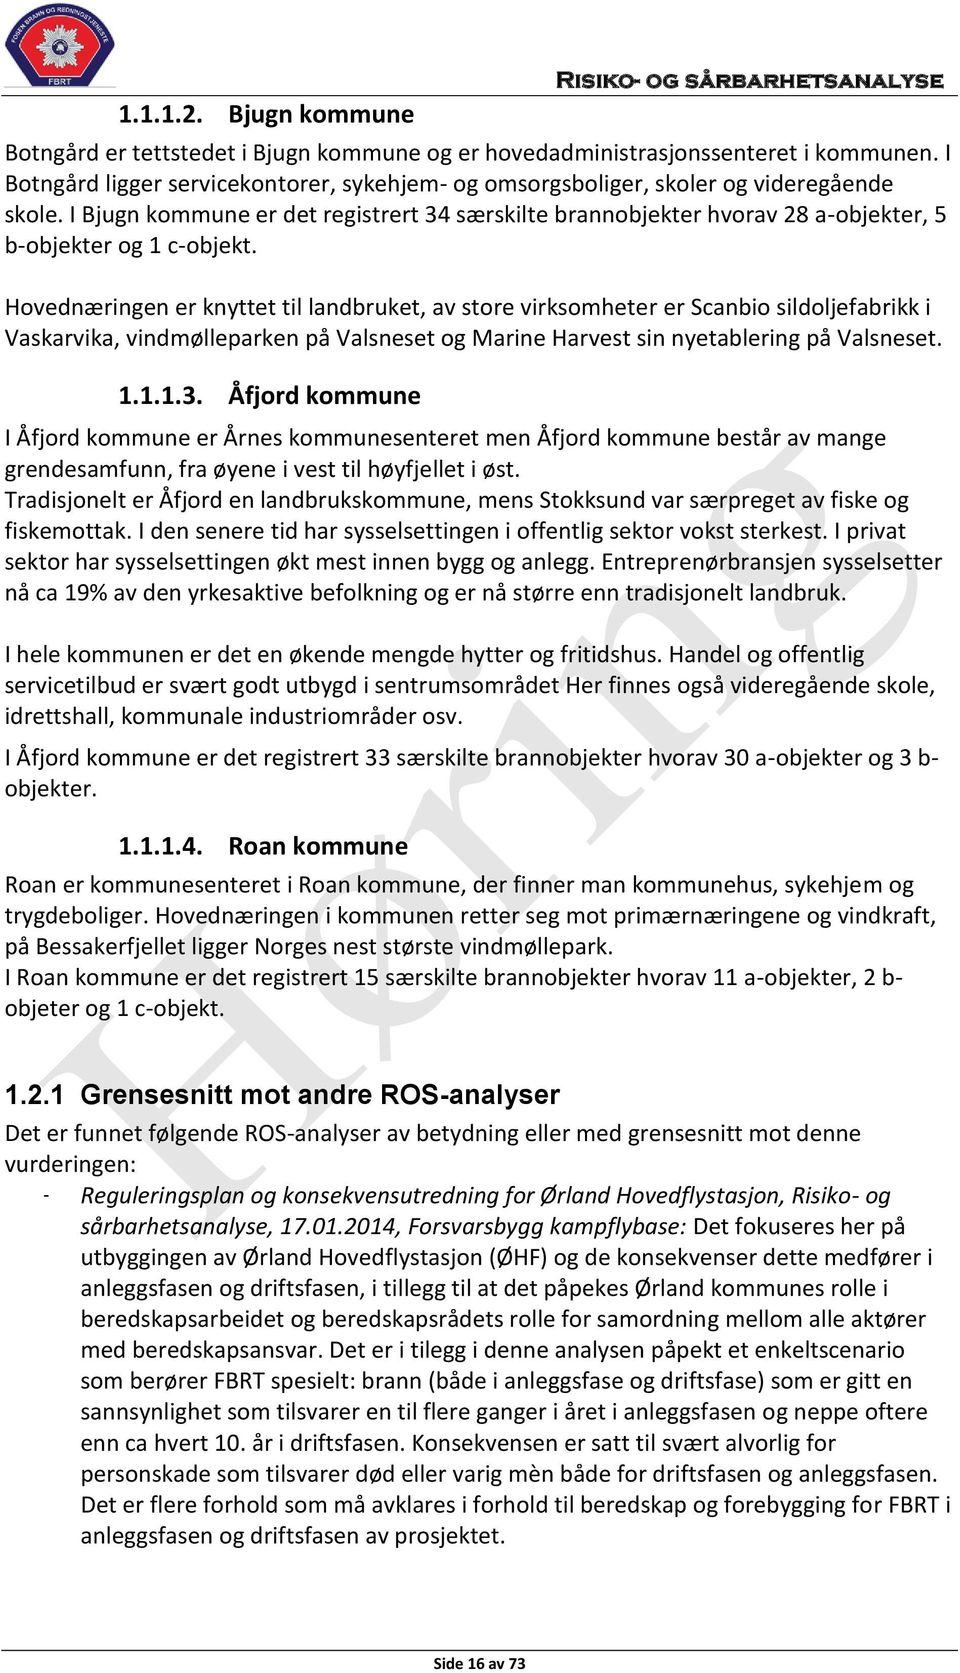 I Bjugn kommune er det registrert 34 særskilte brannobjekter hvorav 28 a-objekter, 5 b-objekter og 1 c-objekt.